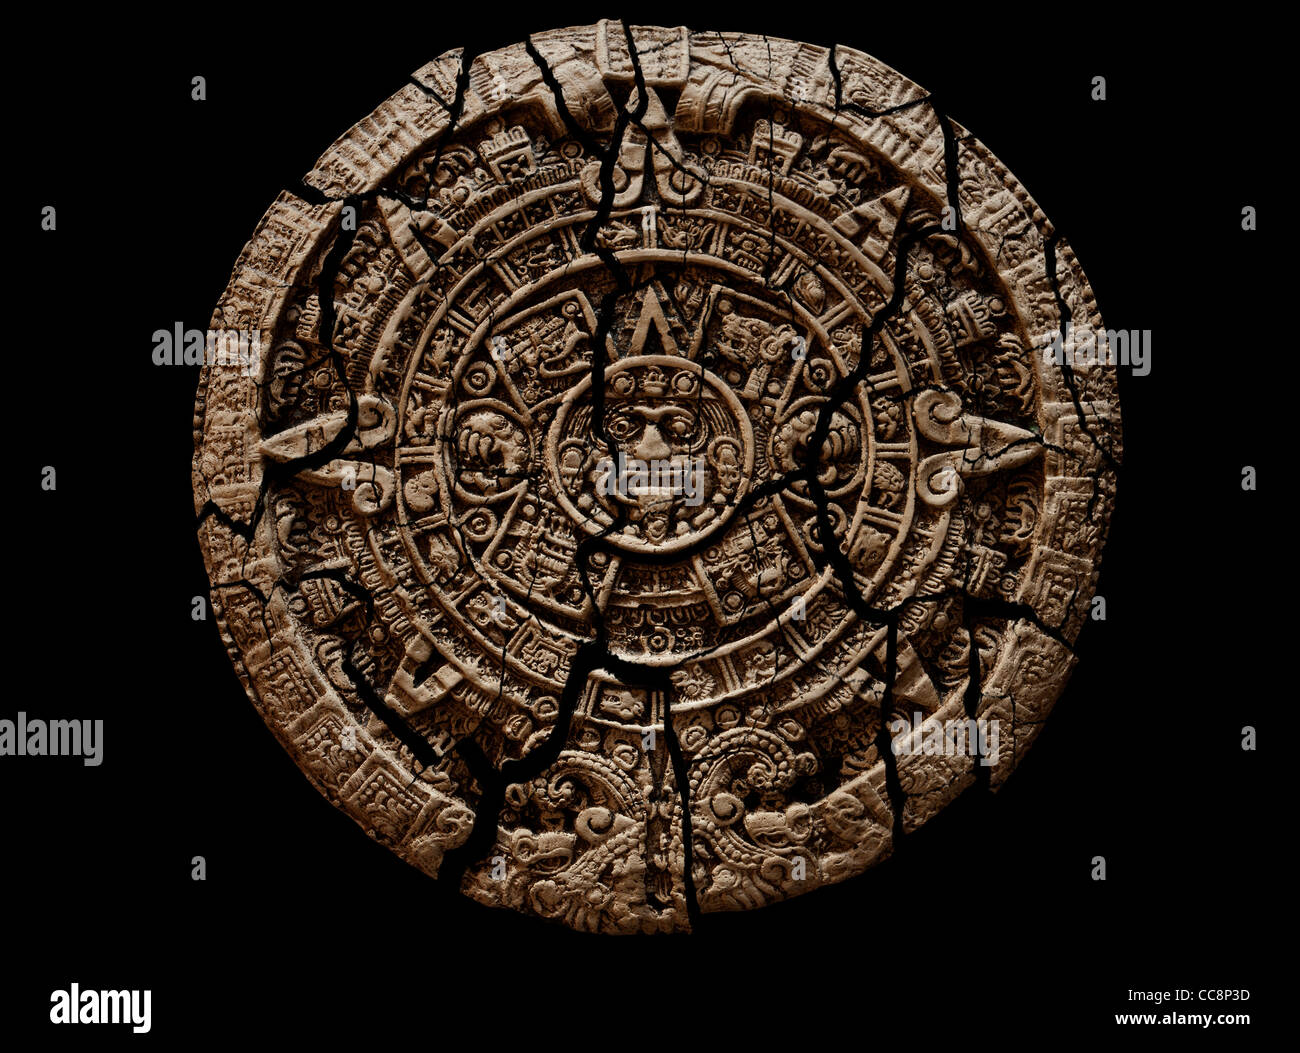 12.2005 et tablette de pierre calendrier maya en ruine sur fond noir découpe. Banque D'Images